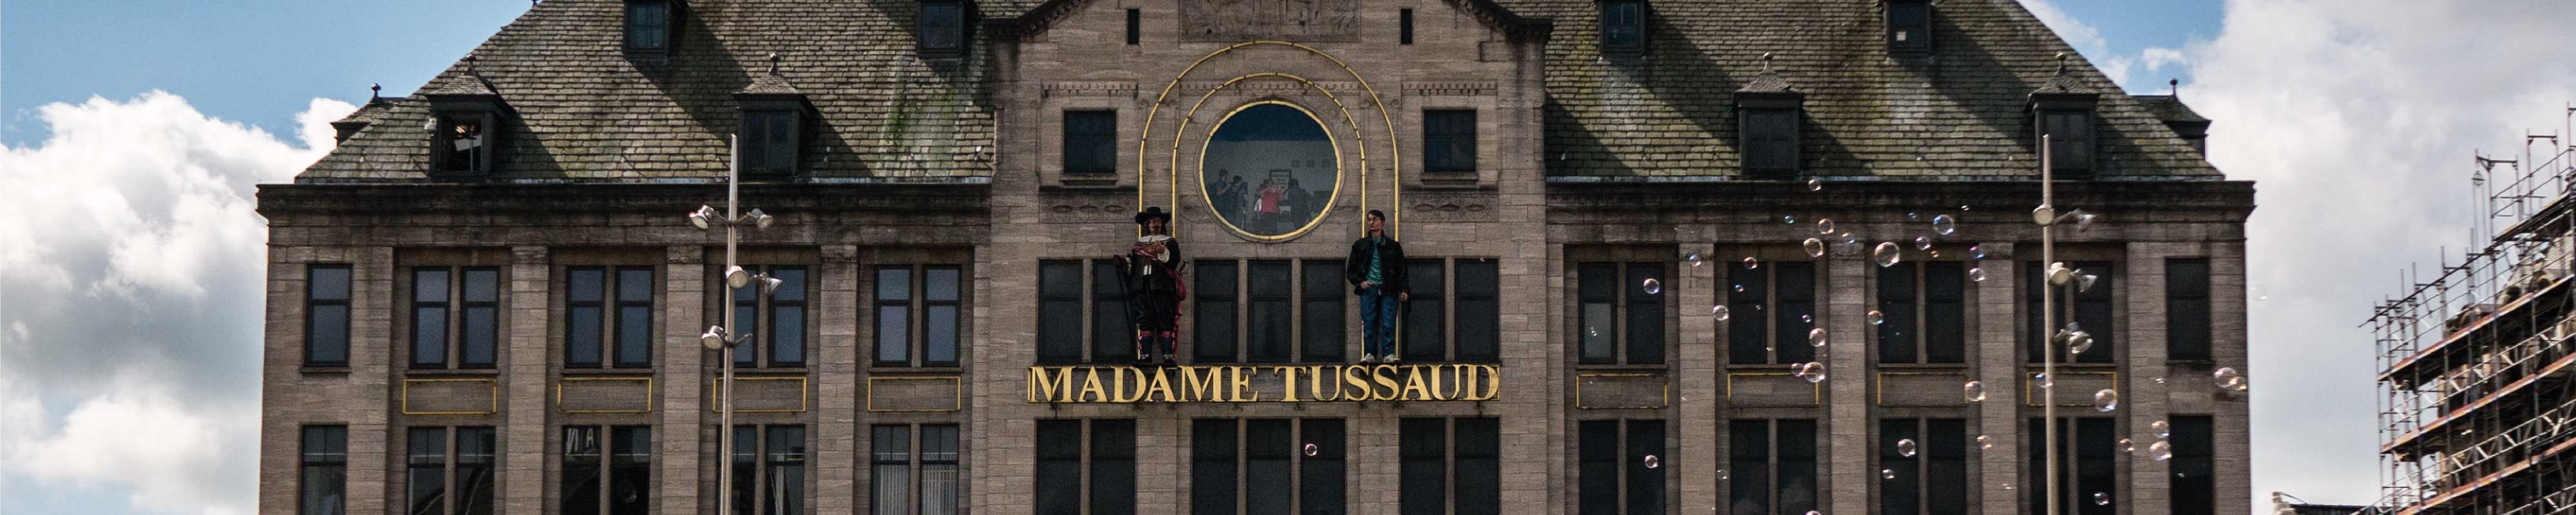 Depósito de Bagagem | Museu Madame Tussauds em Londres - Nannybag